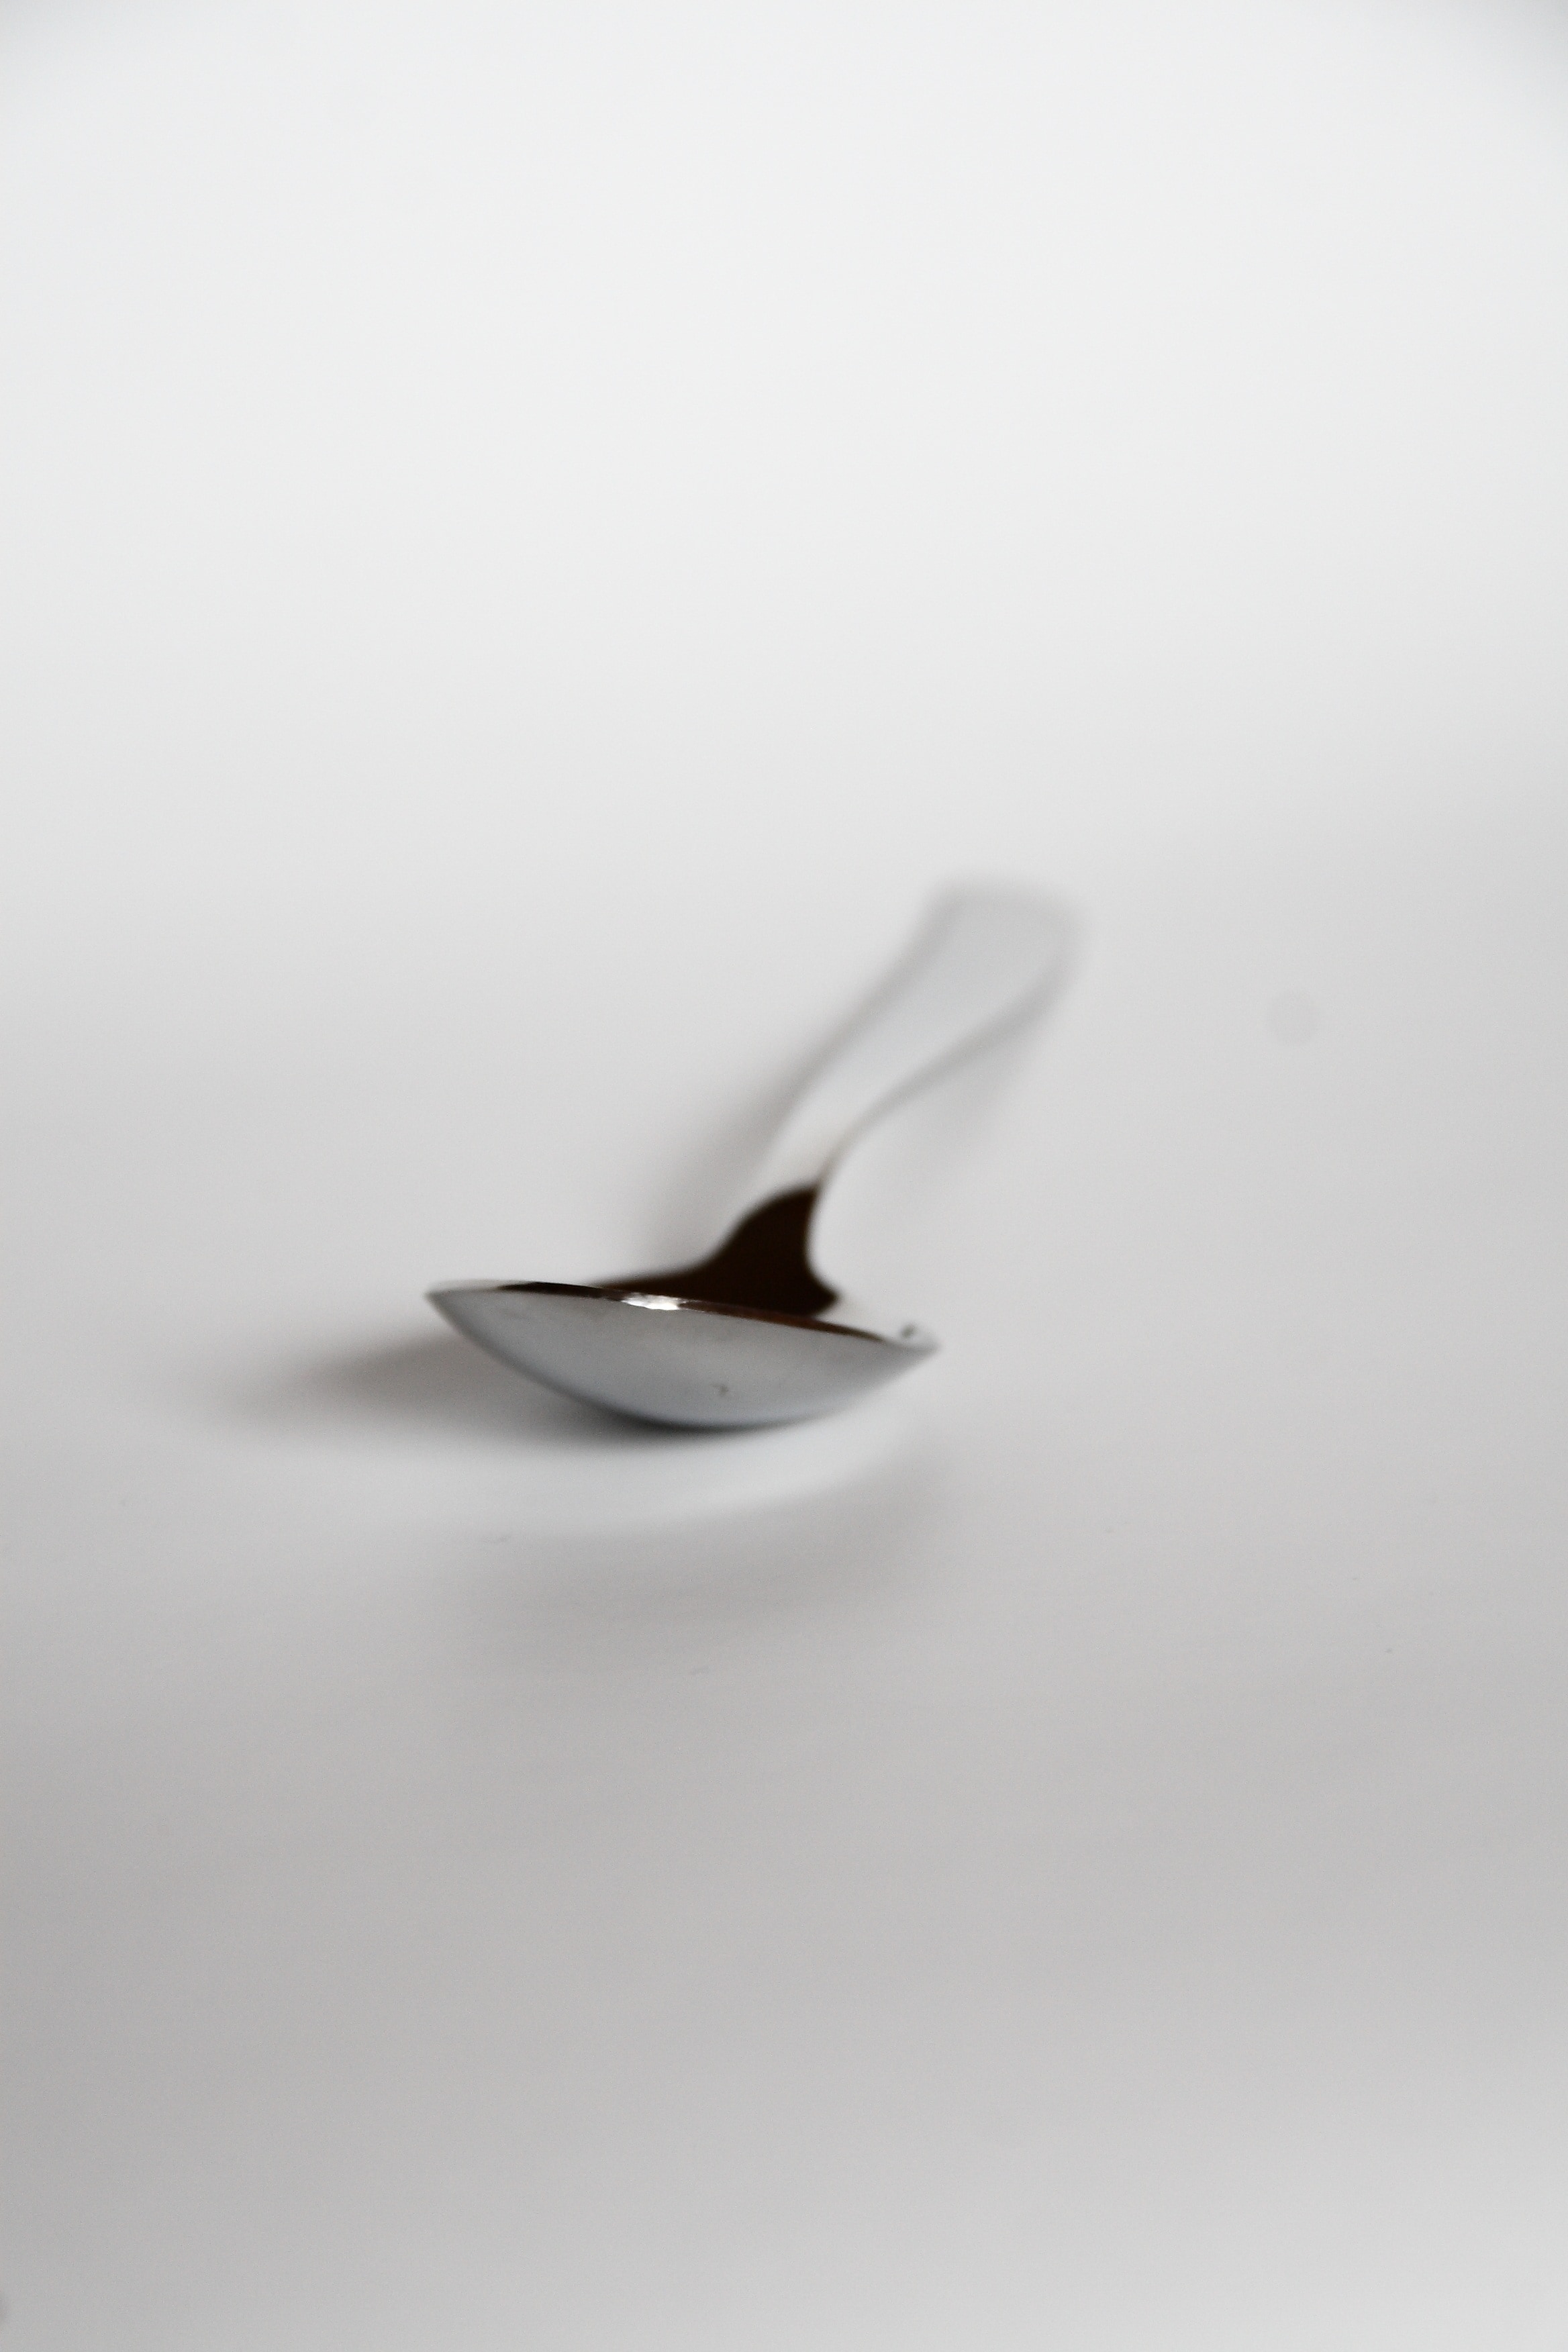 grey metal spoon